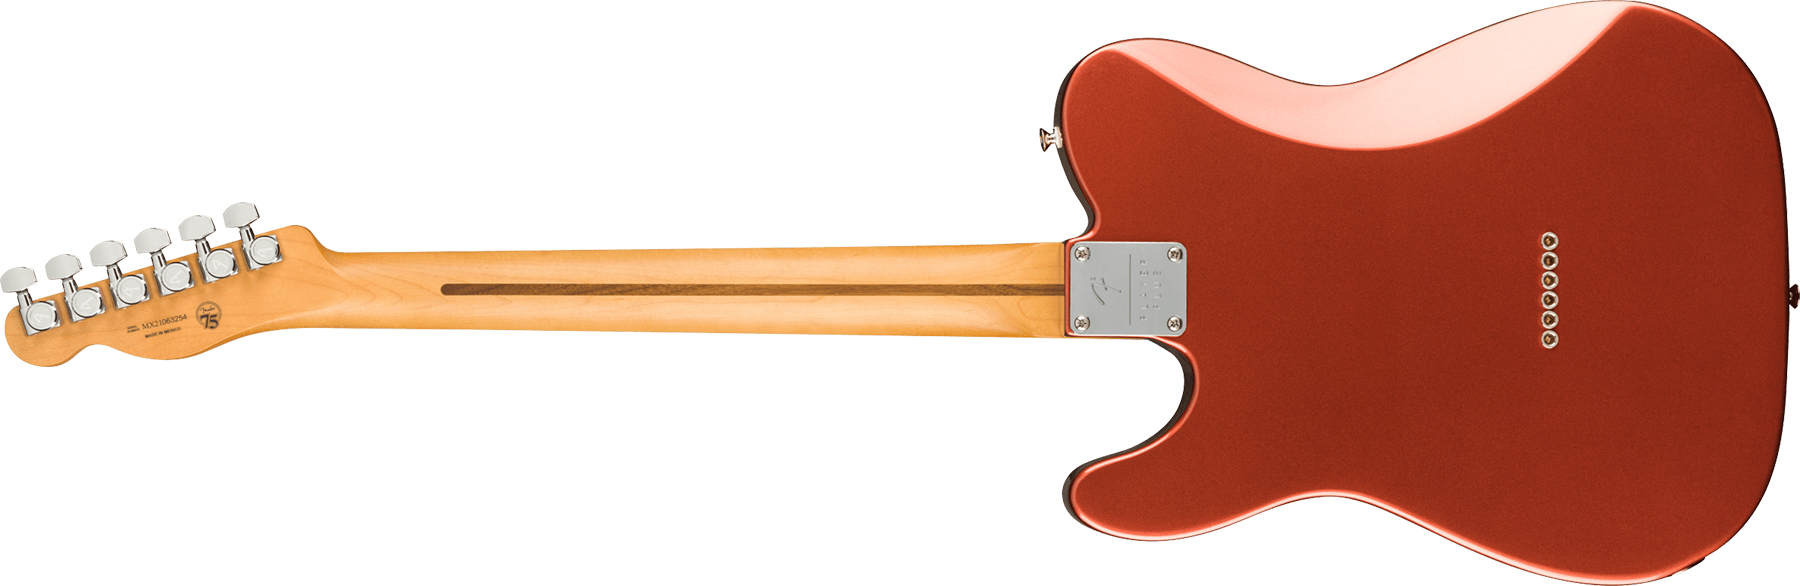 Fender Tele Player Plus Nashville Mex 3s Ht Pf - Aged Candy Apple Red - Televorm elektrische gitaar - Variation 1